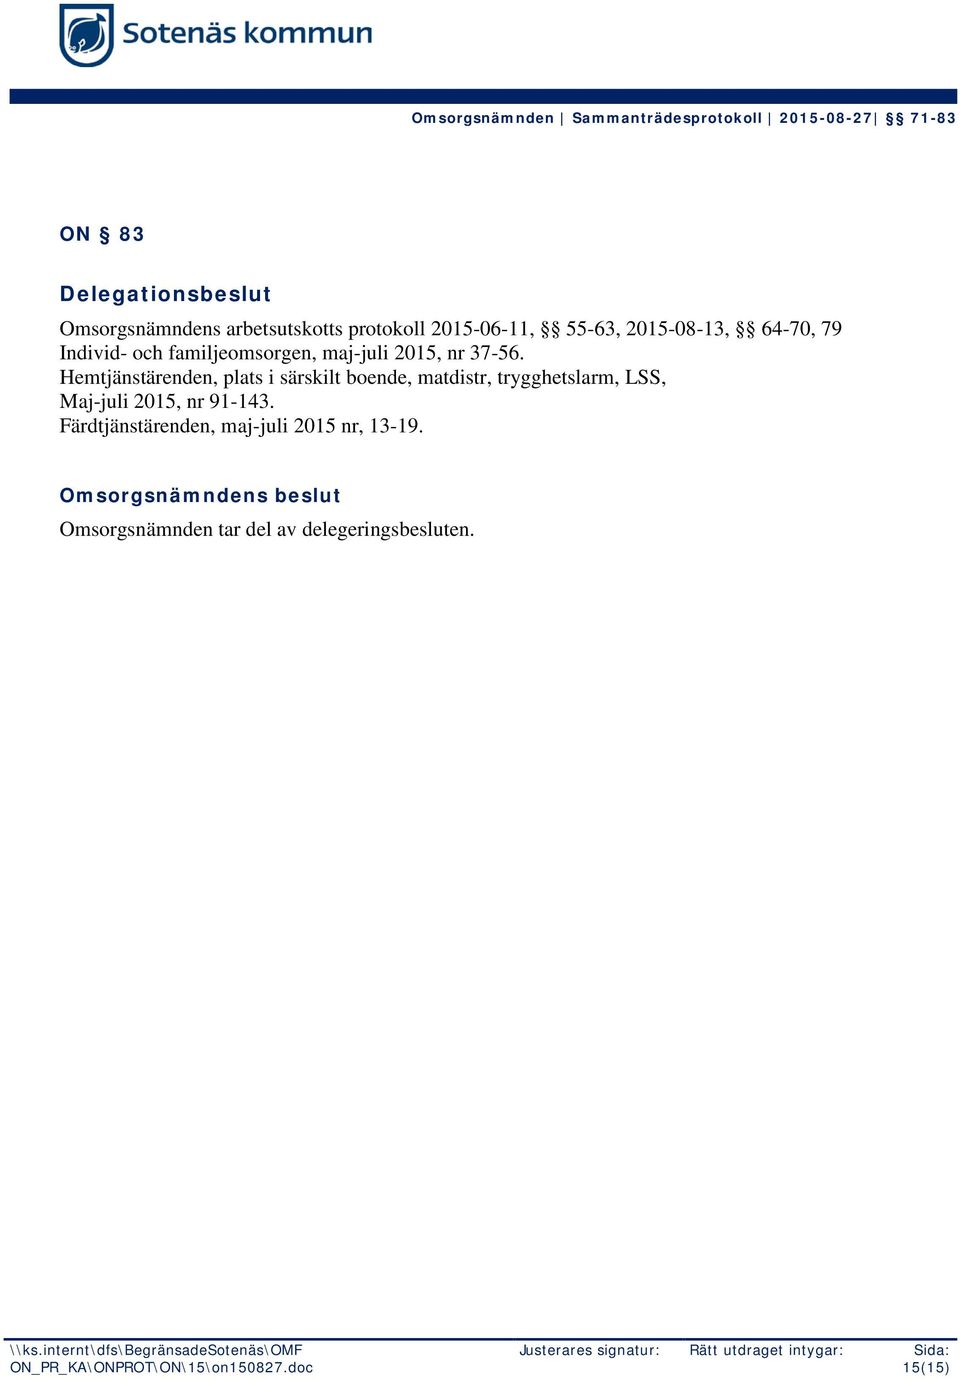 Hemtjänstärenden, plats i särskilt boende, matdistr, trygghetslarm, LSS, Maj-juli 2015, nr 91-143.